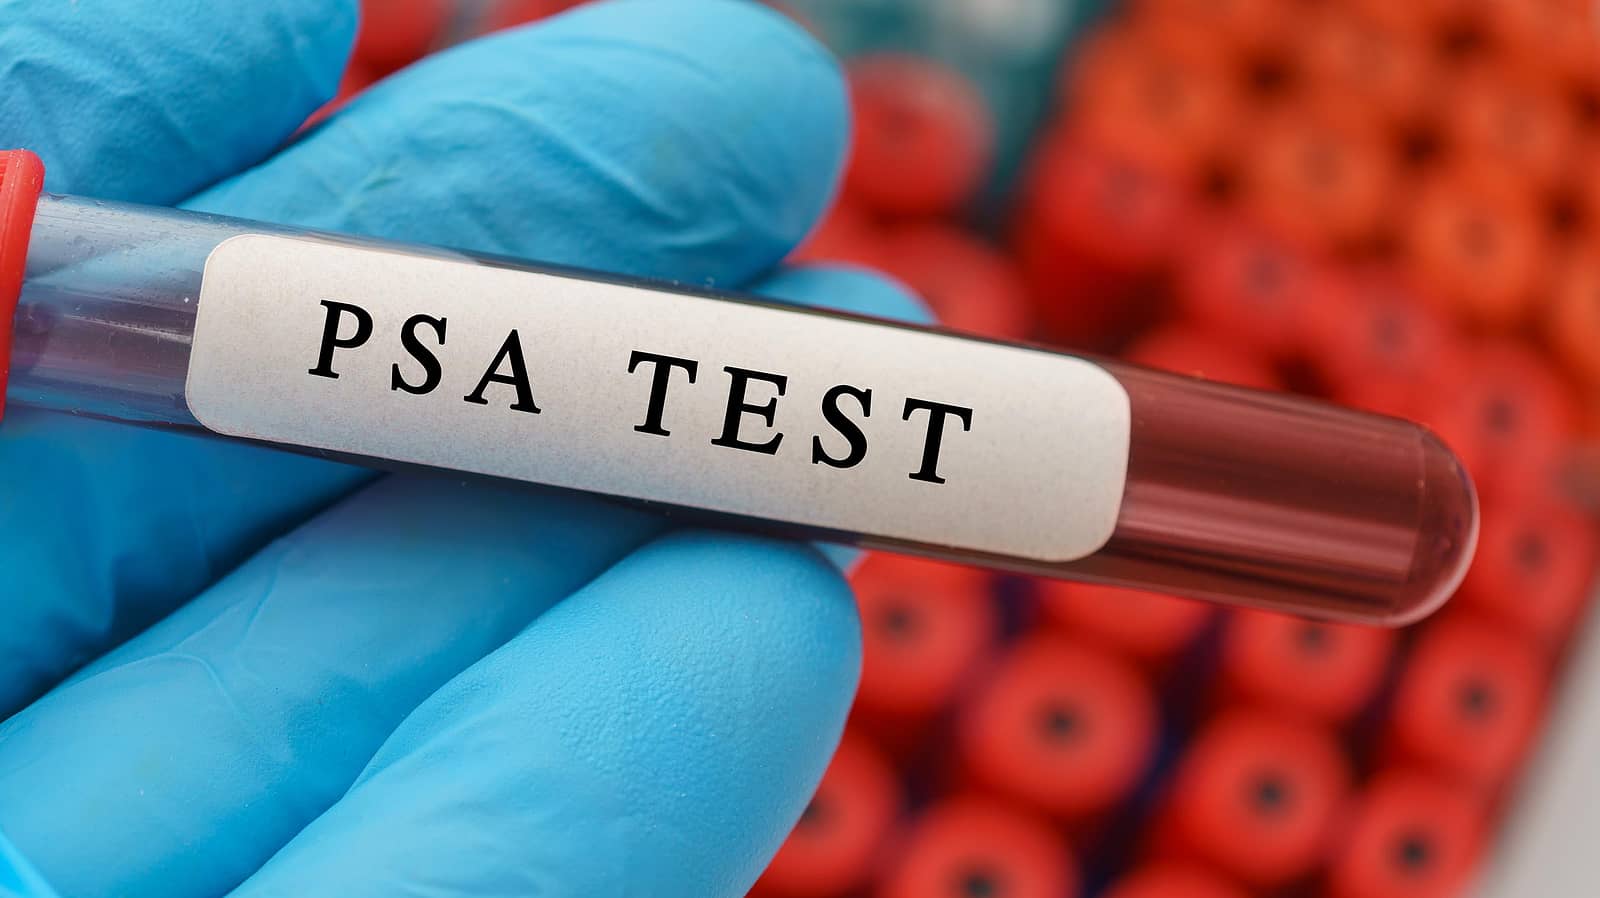 Medicare Coverage Prostate-Specific Antigen (PSA) Tests